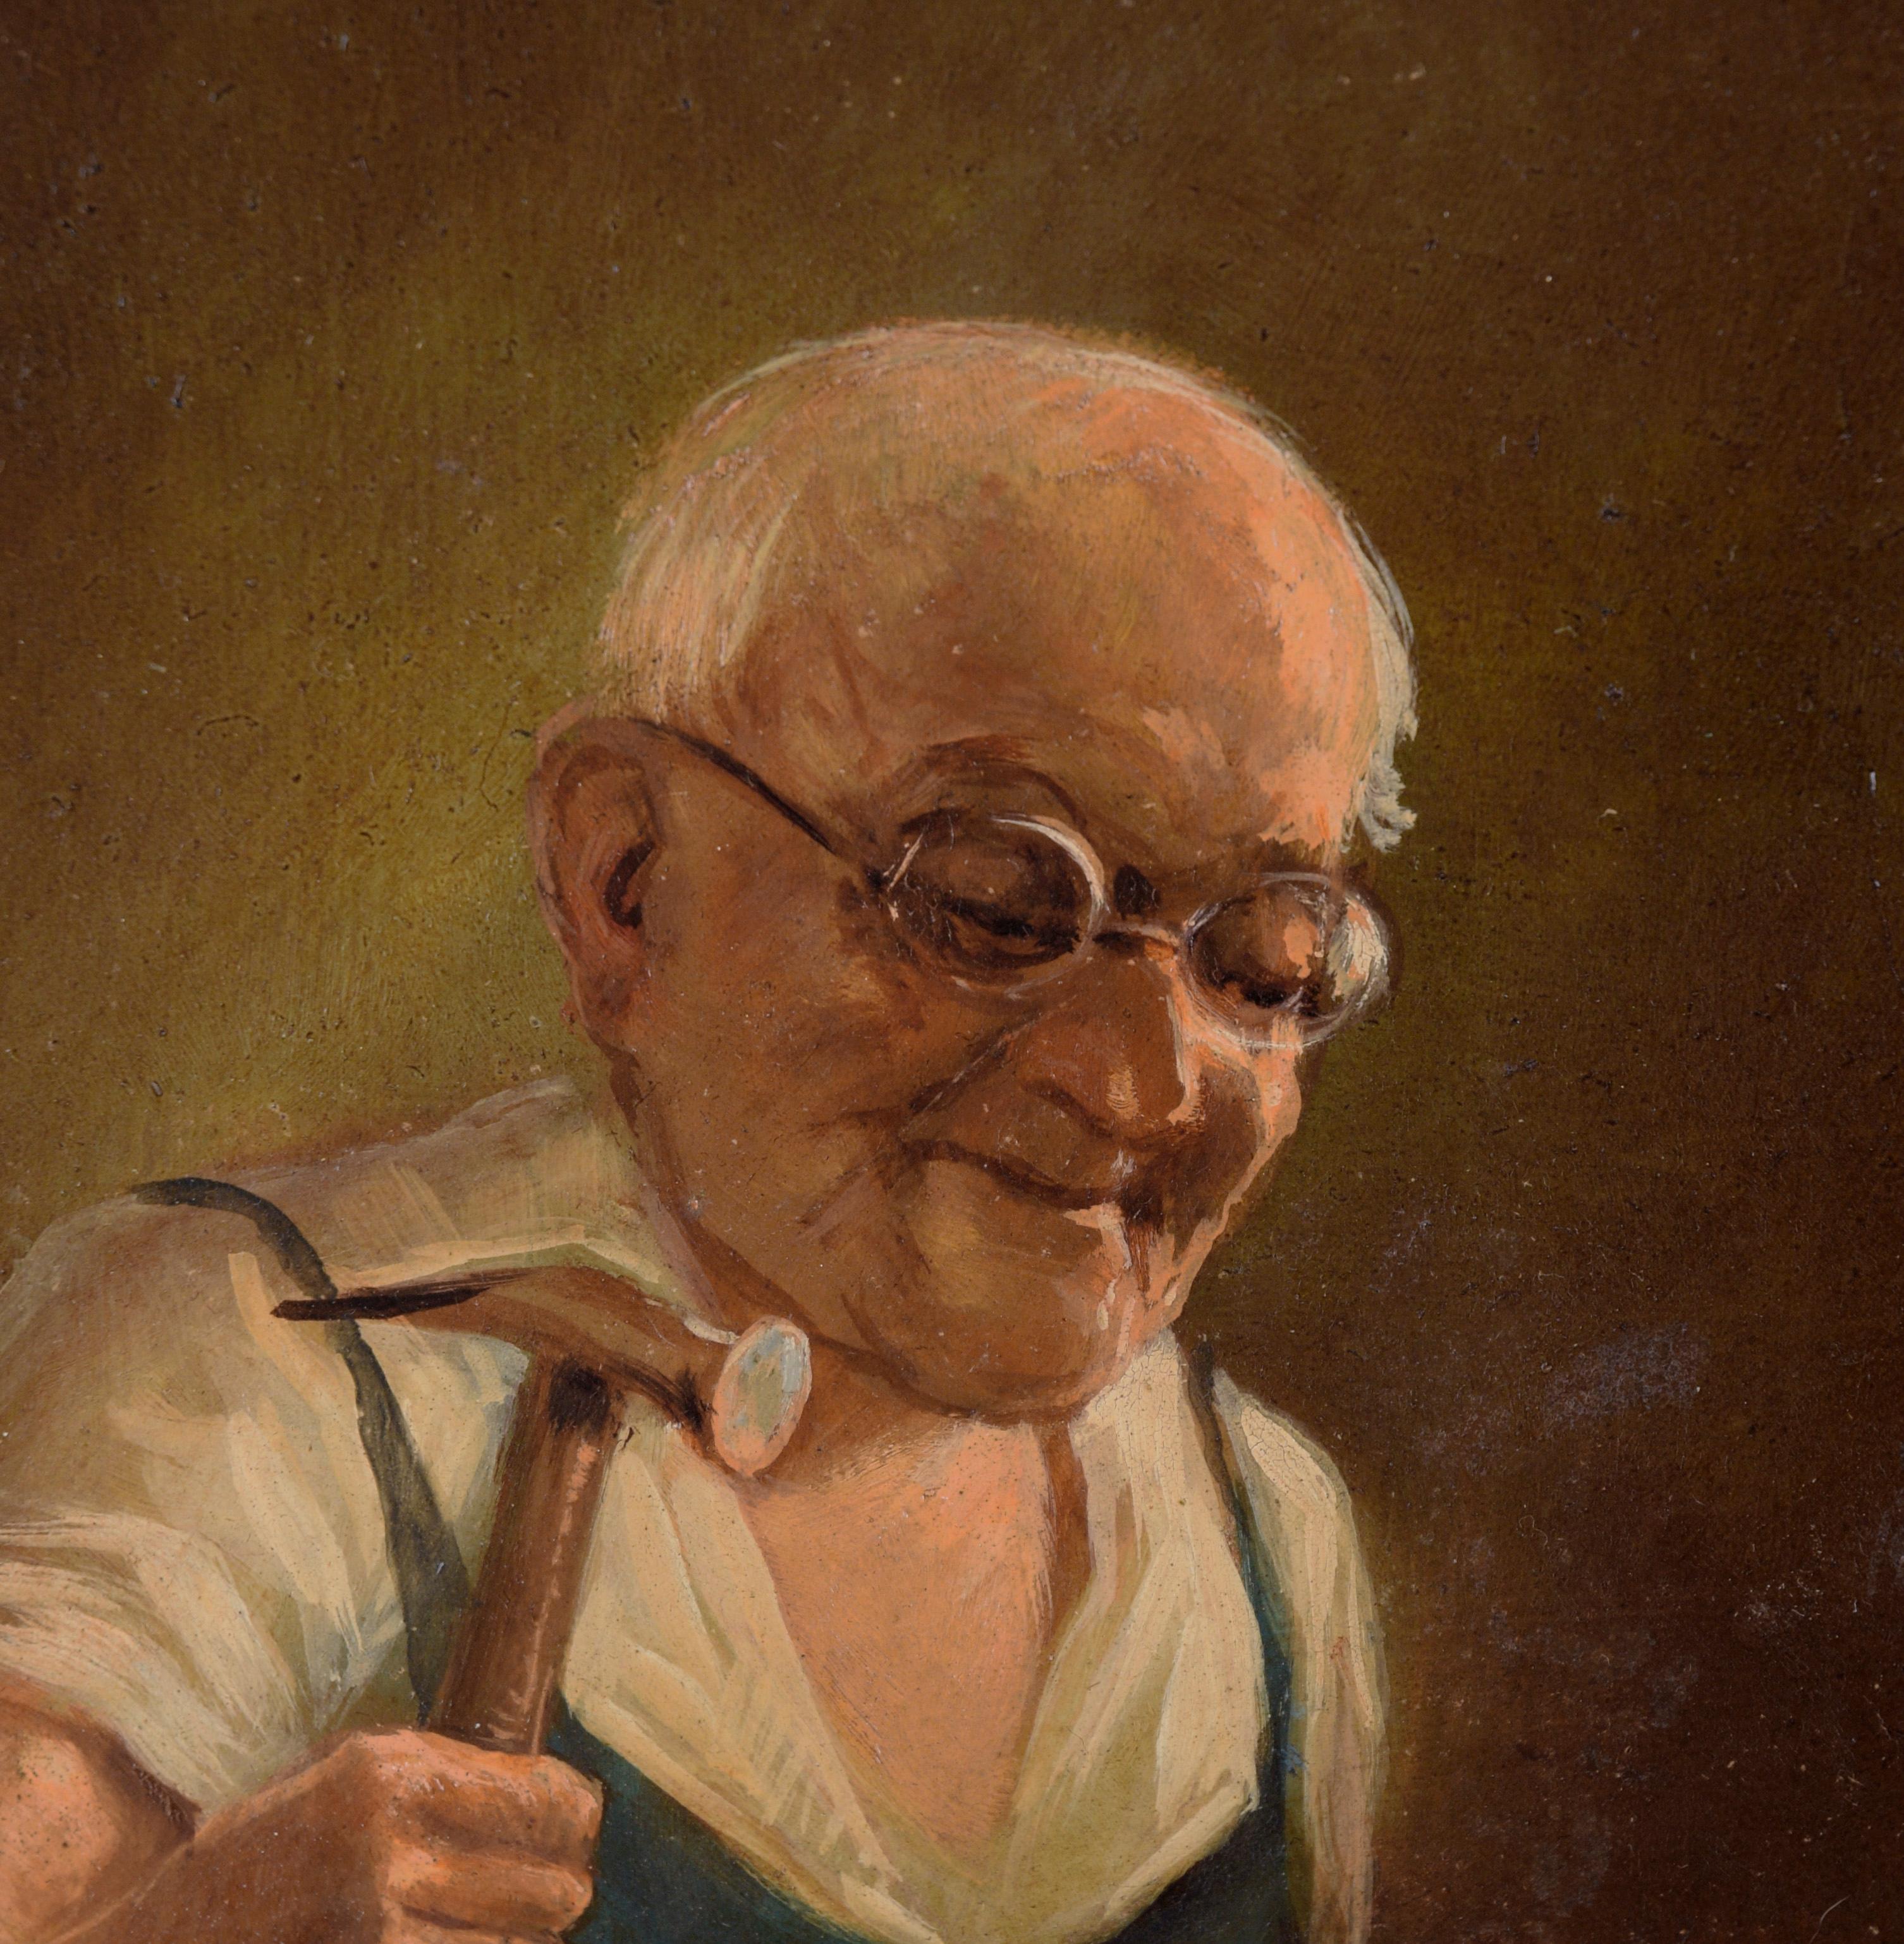 Shoemaker at Work - Portrait à l'huile sur massonite

Joli portrait d'un cordonnier au travail par Max Schneider (allemand, 1903-1980). Le cordonnier tient un marteau et travaille sur une chaussure retournée à son établi. Il porte une chemise